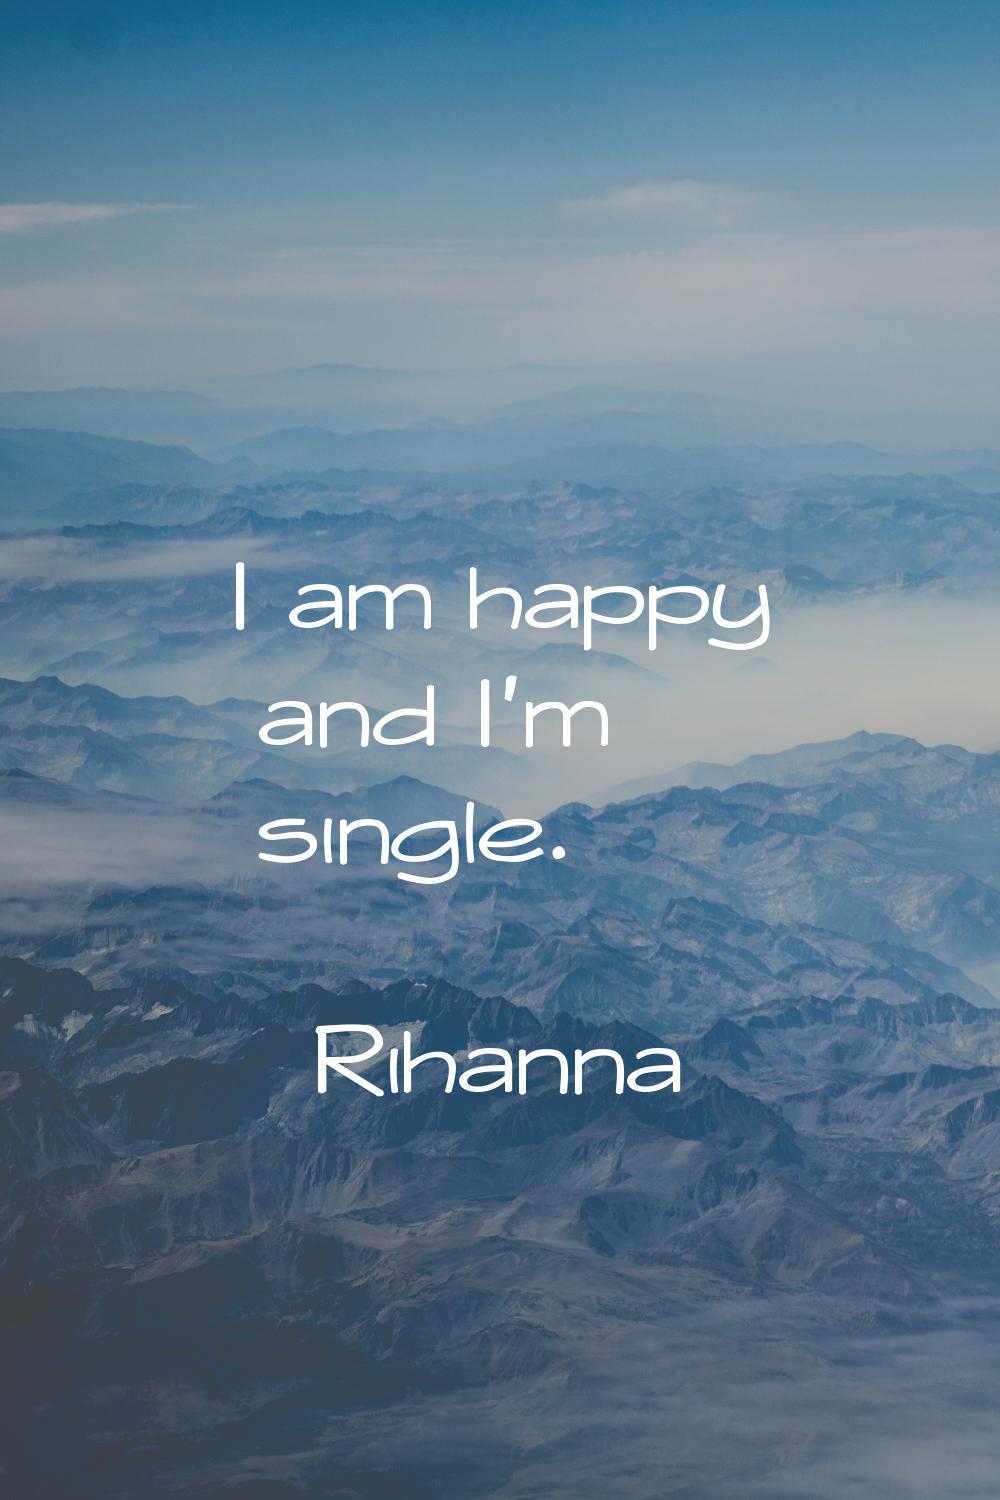 I am happy and I'm single.